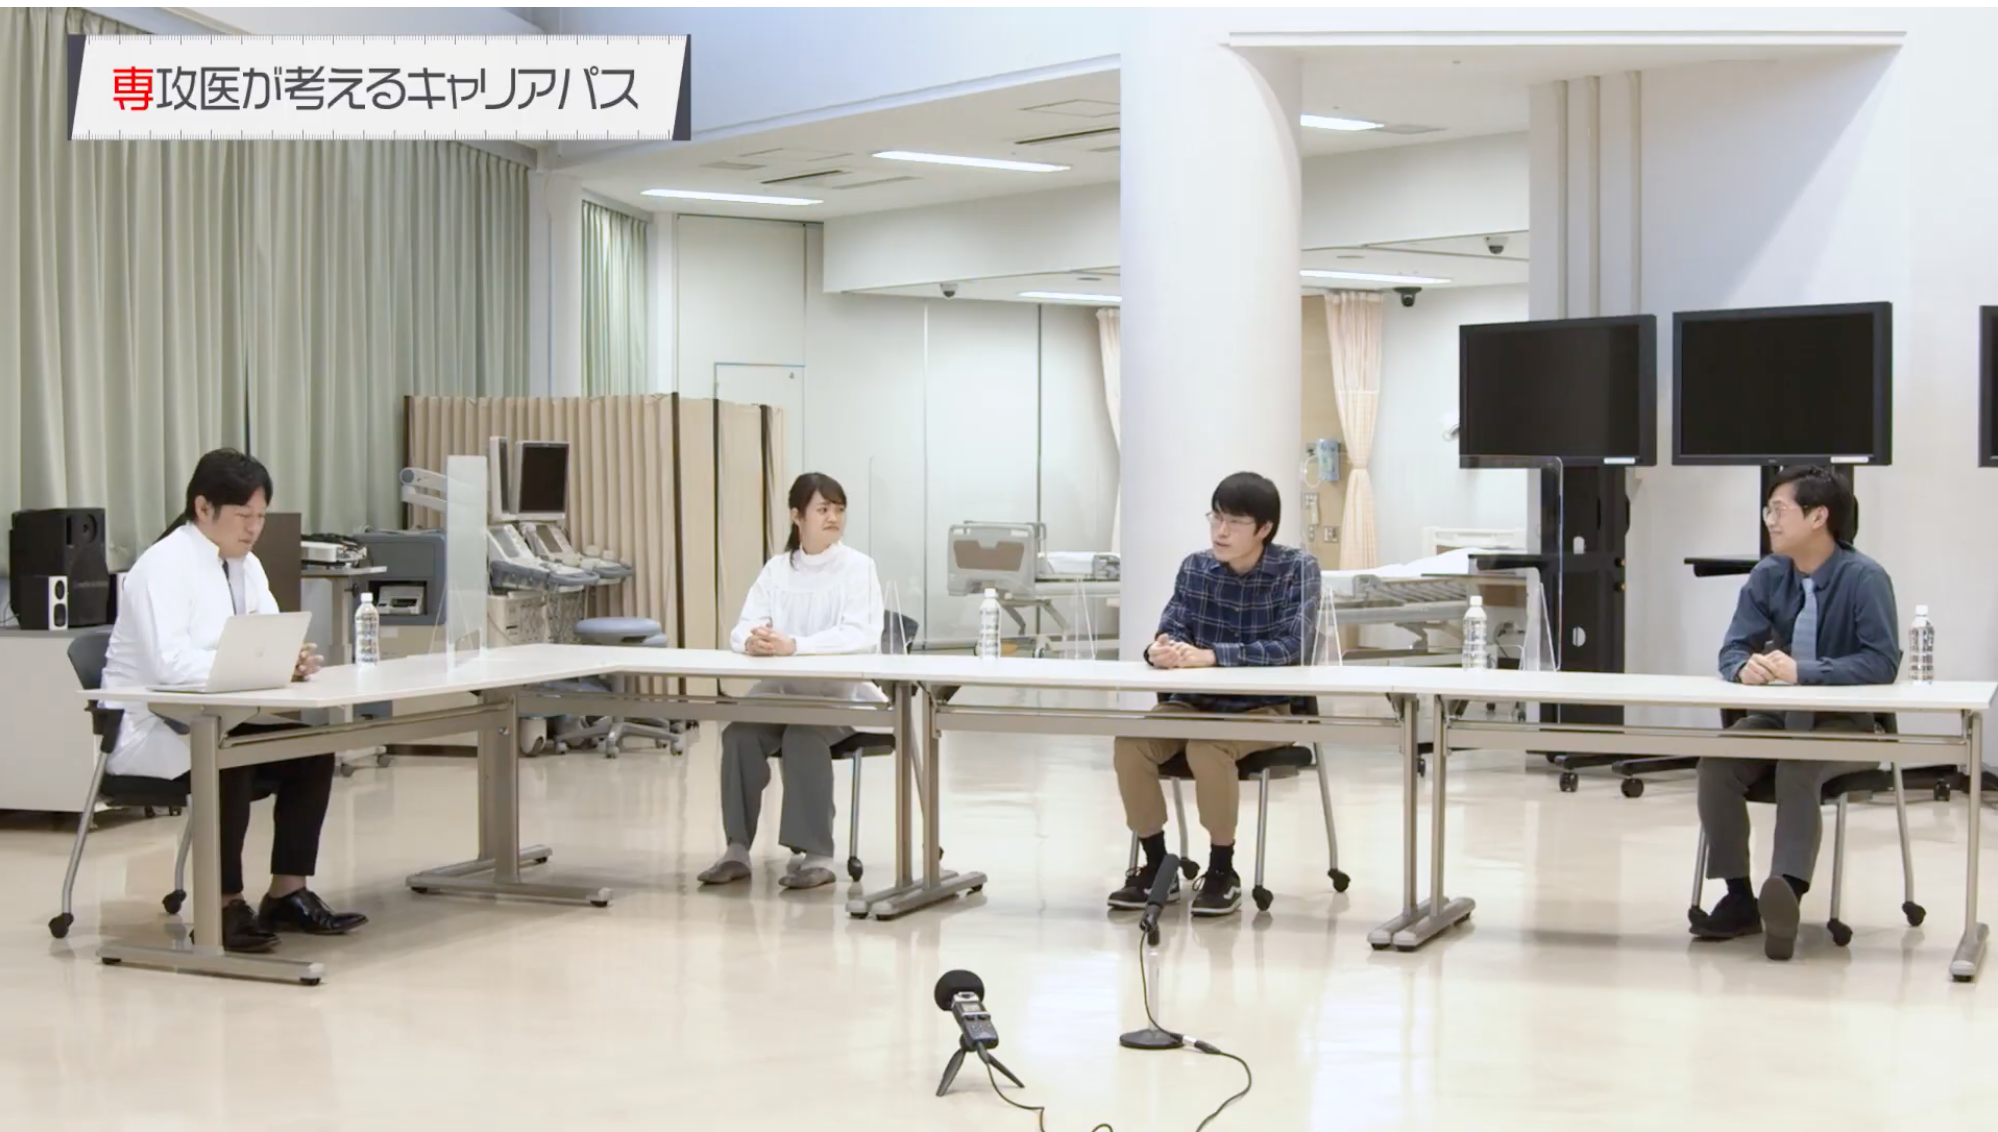 千葉医師研修支援ネットワークが総合診療の魅力を伝える動画を制作しました。